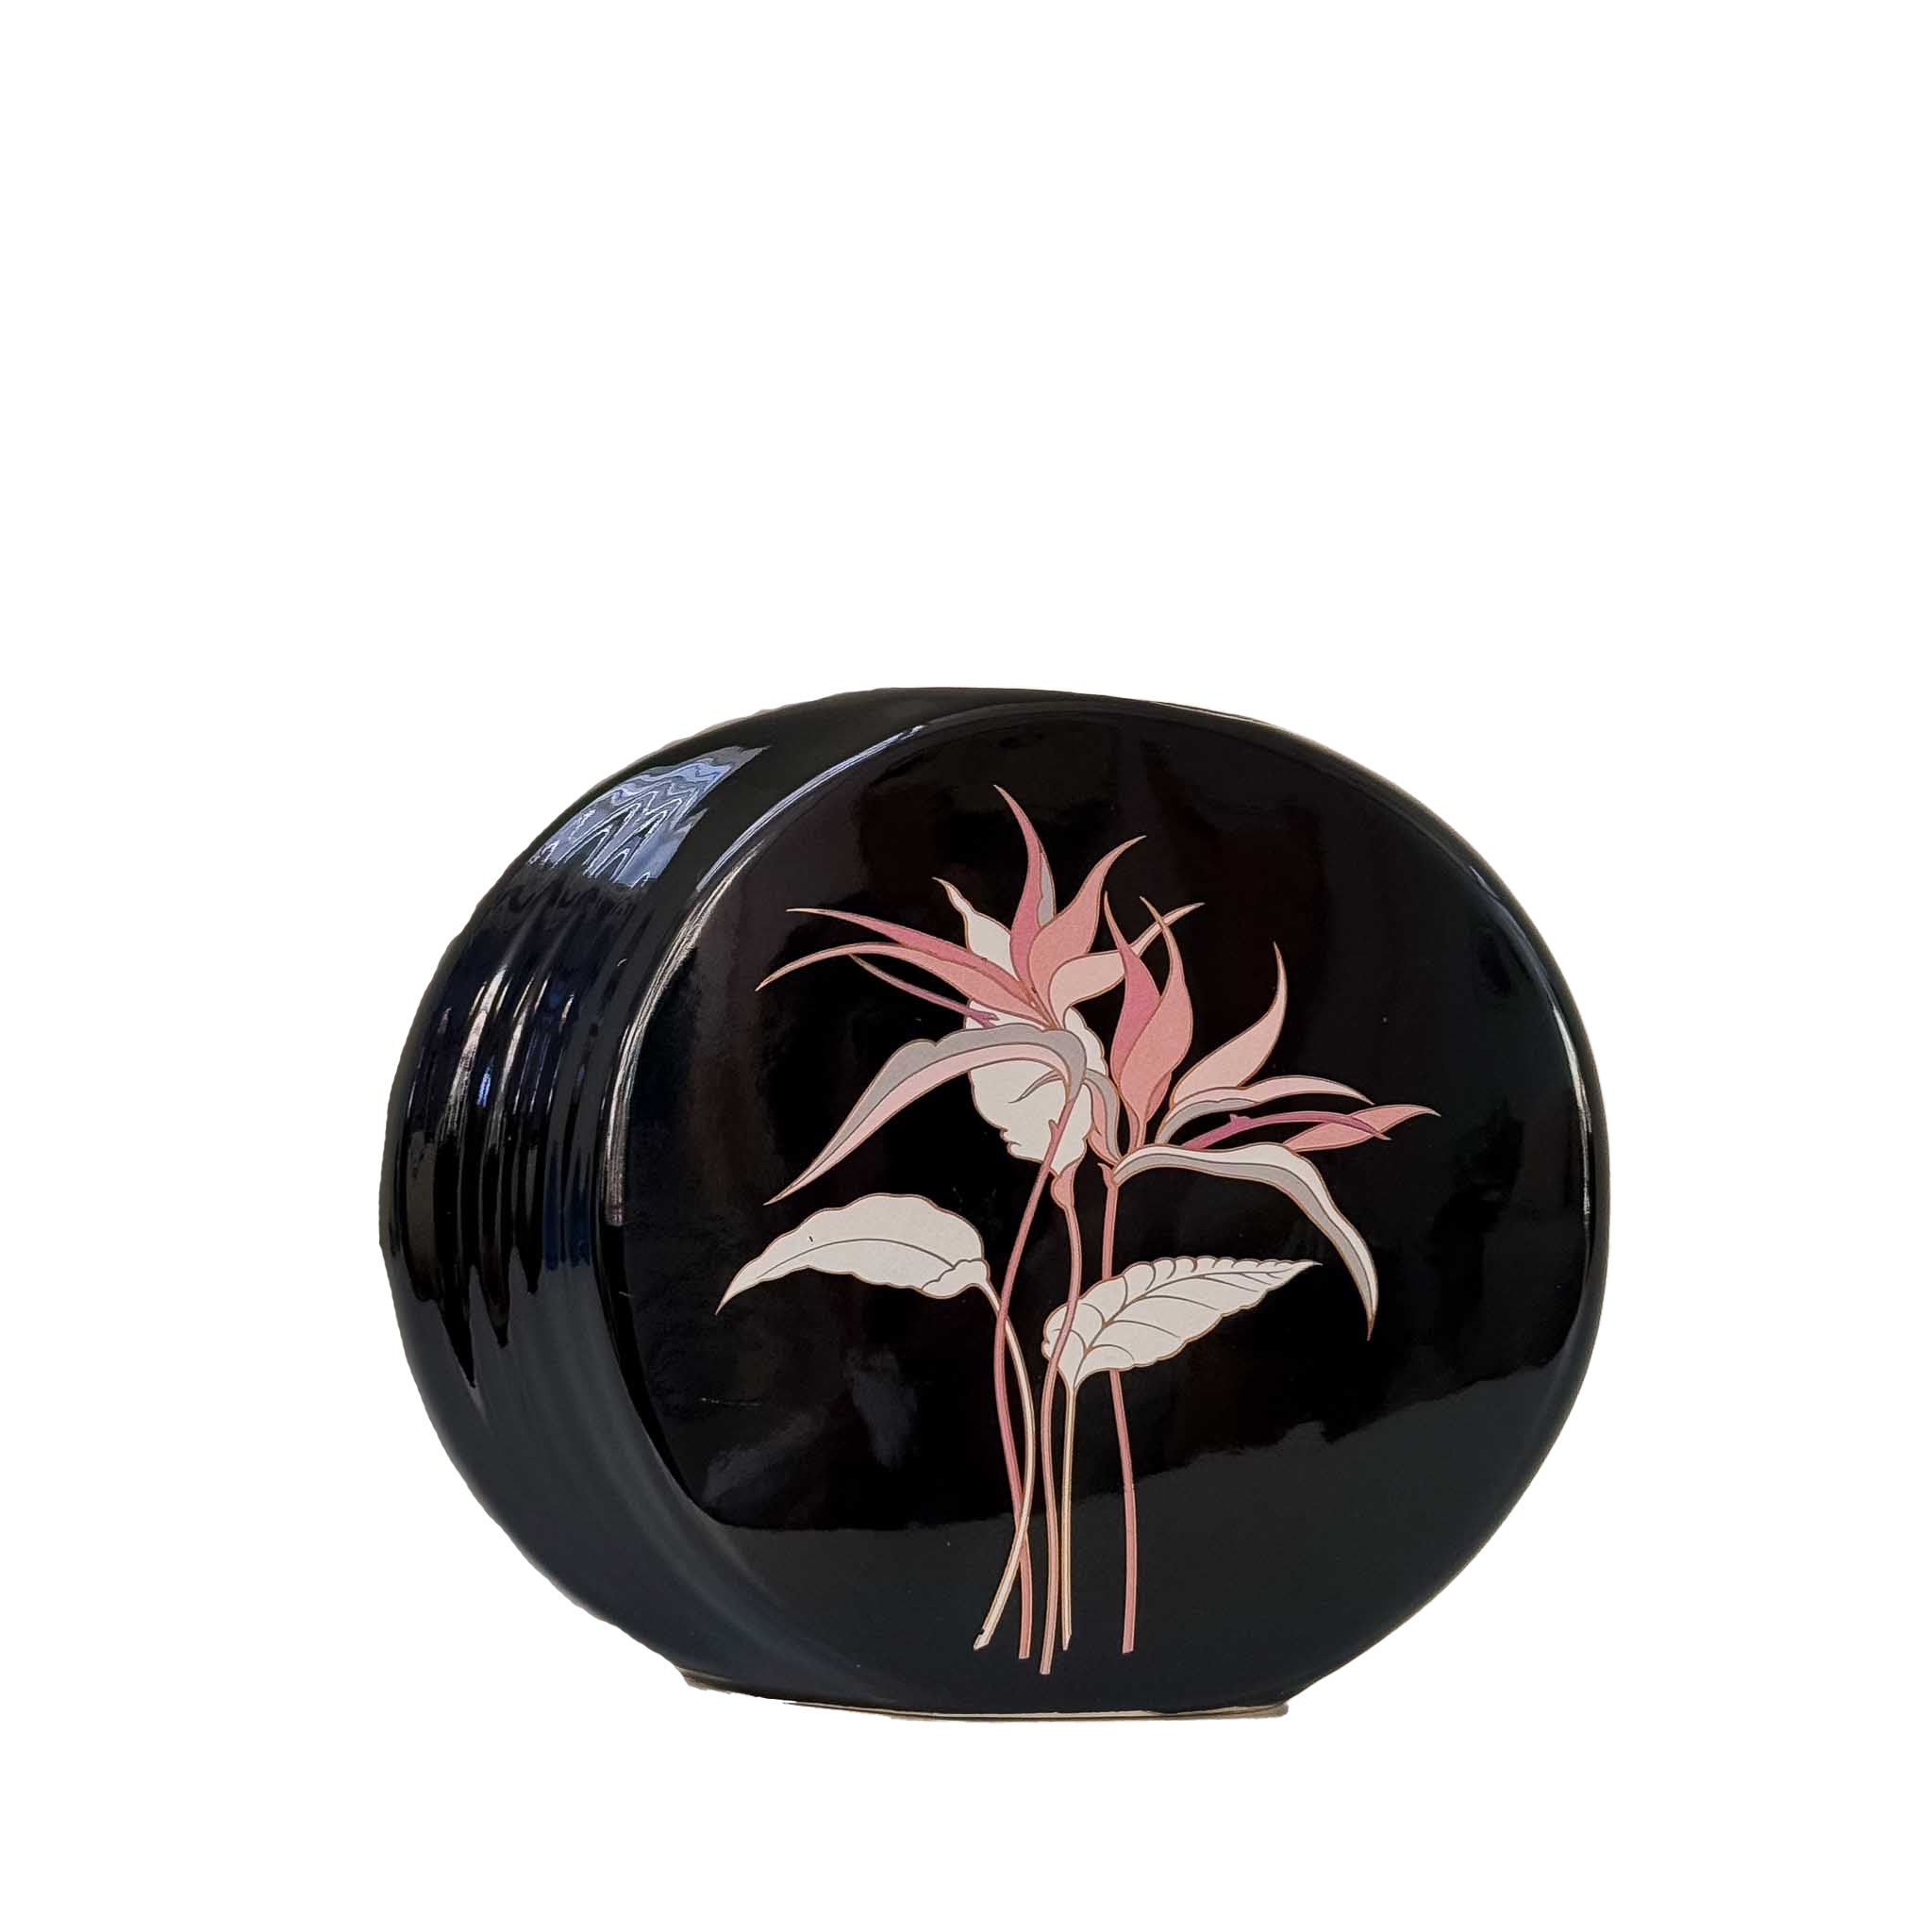 Vintage Japan 80s Vases Floral Black